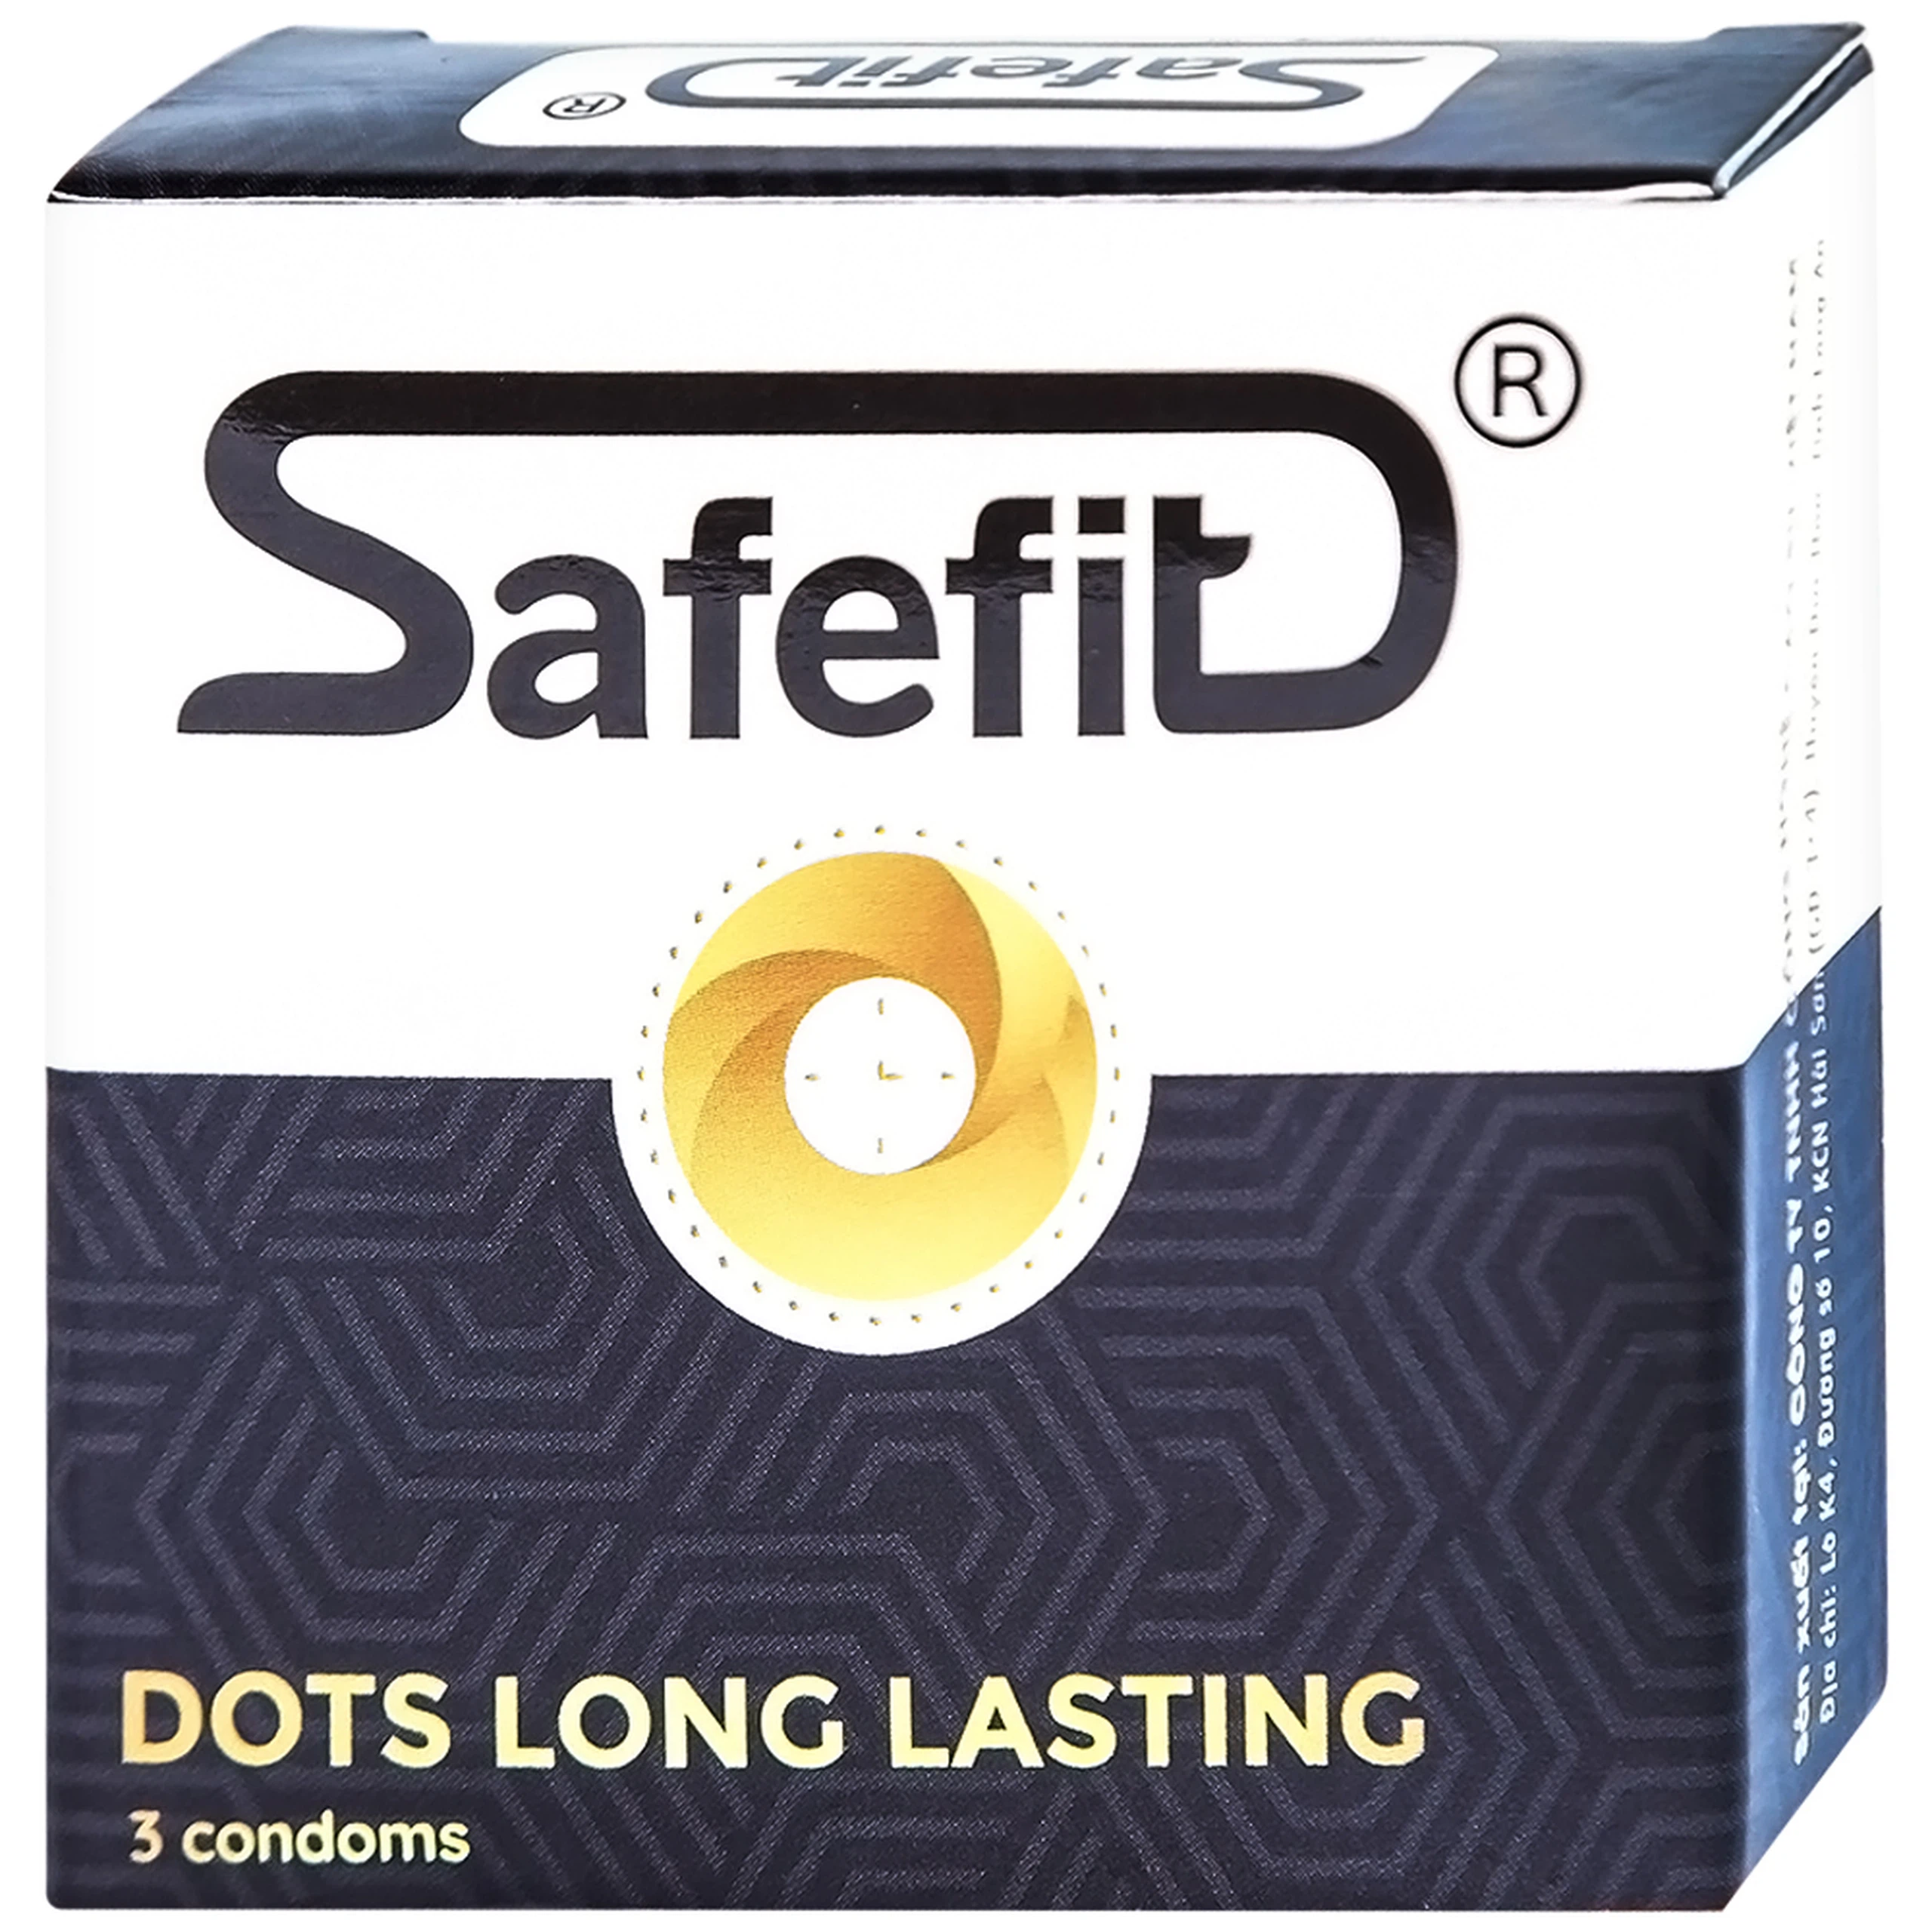 Bao cao su Safefit Dots Long Lasting S52 có vòng gân, hạt nổi, thắt chống tuột (3 cái)